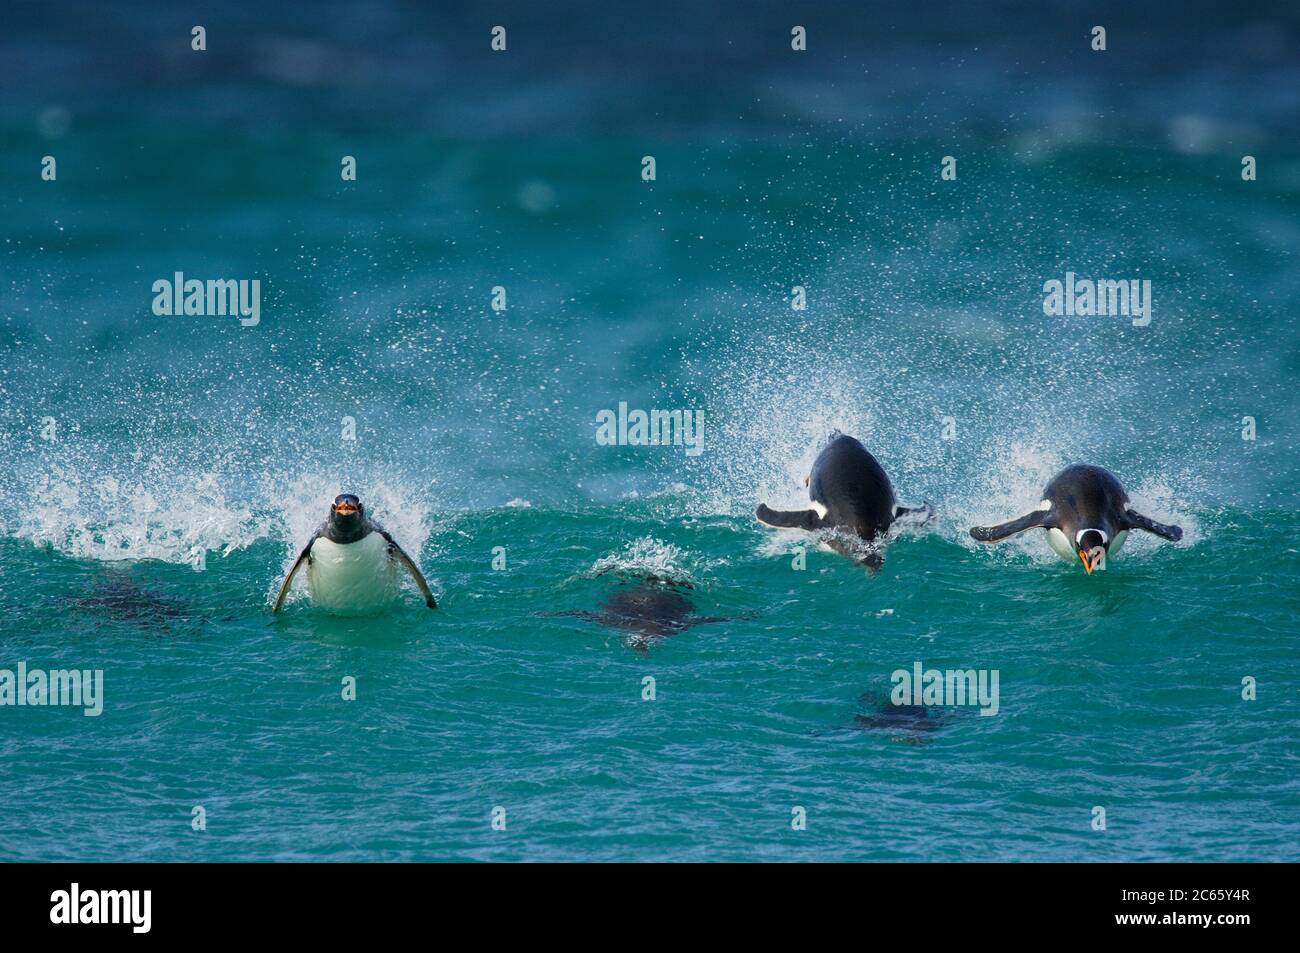 Avec une vitesse de nage allant jusqu'à 30 km/h, le Penguin Gentoo (Pygoscelis papouasie) est le fastes parmi les pingouins. Le porpoising est un moyen très efficace de voyager à grande vitesse car l'animal tire profit de la résistance plus faible dans l'air que sous l'eau et est capable de respirer avec le bec ouvert. [taille d'un organisme : 75 cm] Banque D'Images